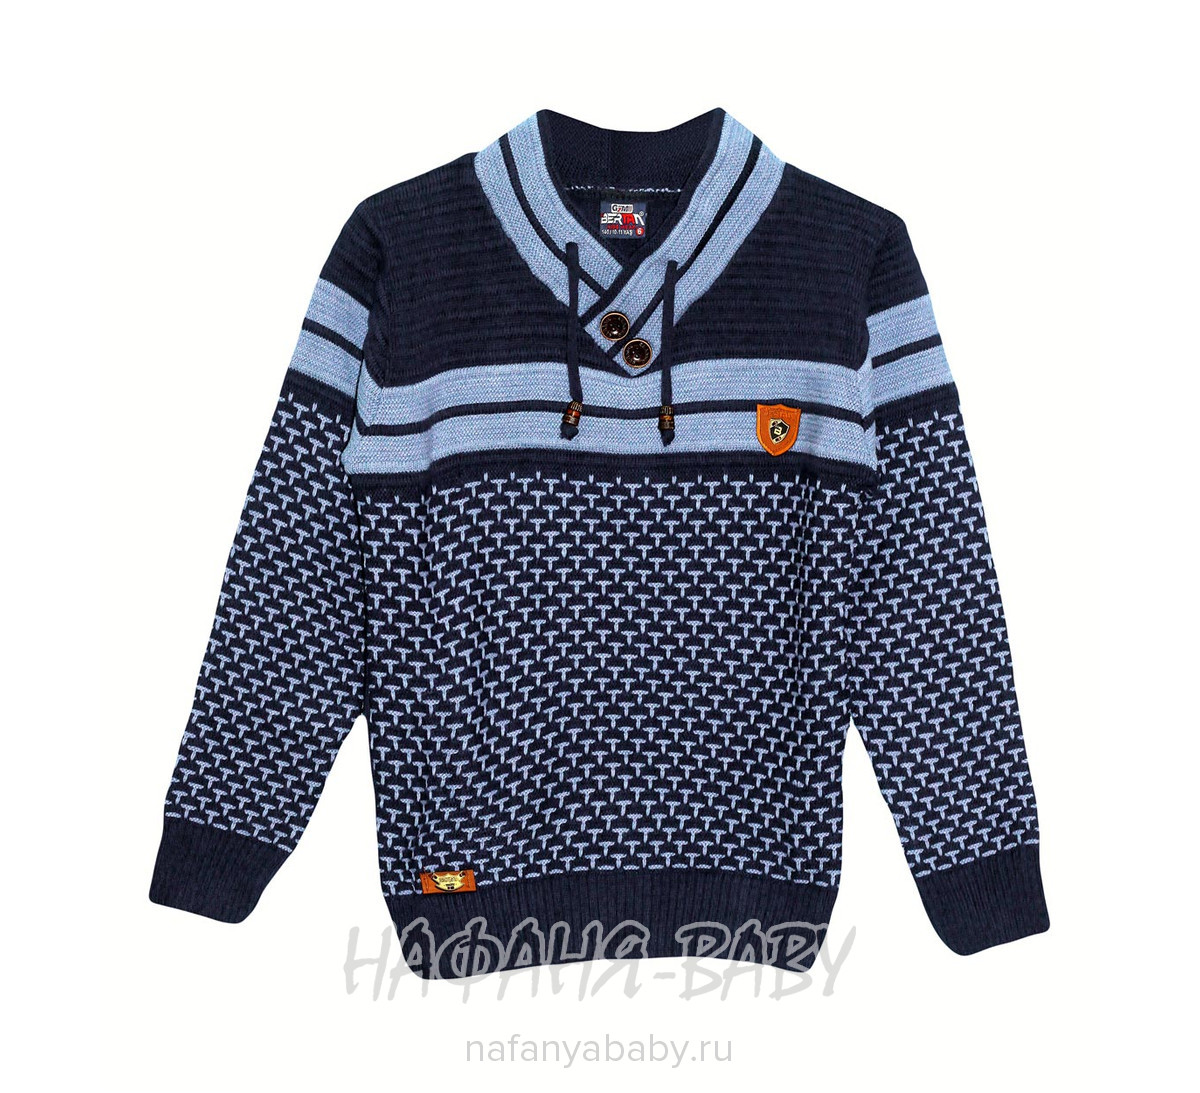 Вязанный пуловер для мальчика BERTAN, купить в интернет магазине Нафаня. арт: 851.